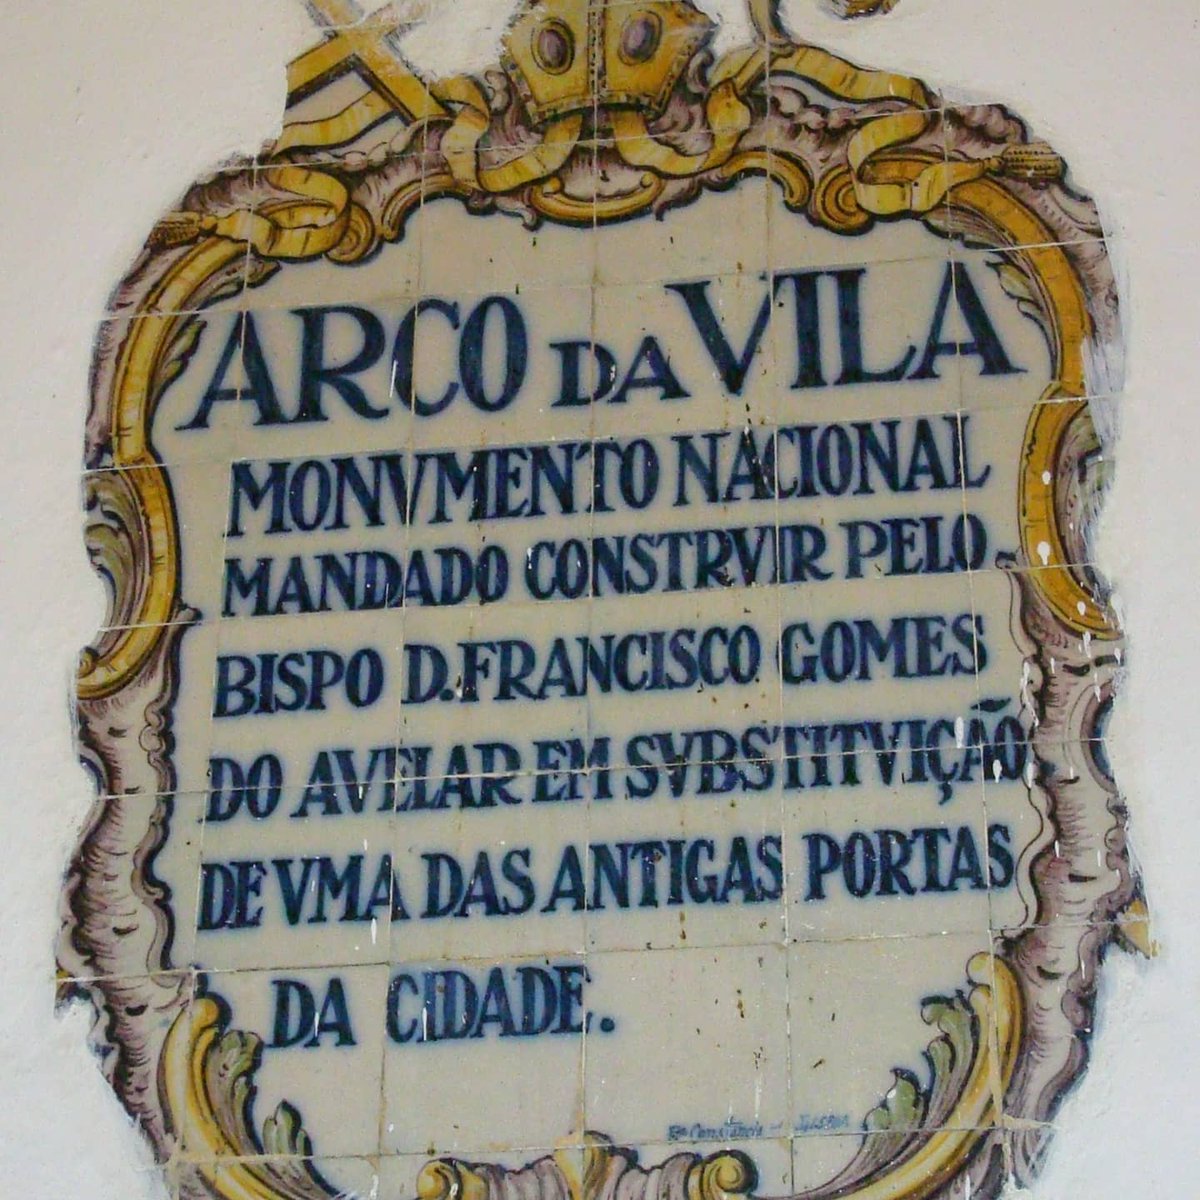 Arco da Vila, #Faro #Portugal #HáUmaDécada #ADecadeAgo #travelphotography